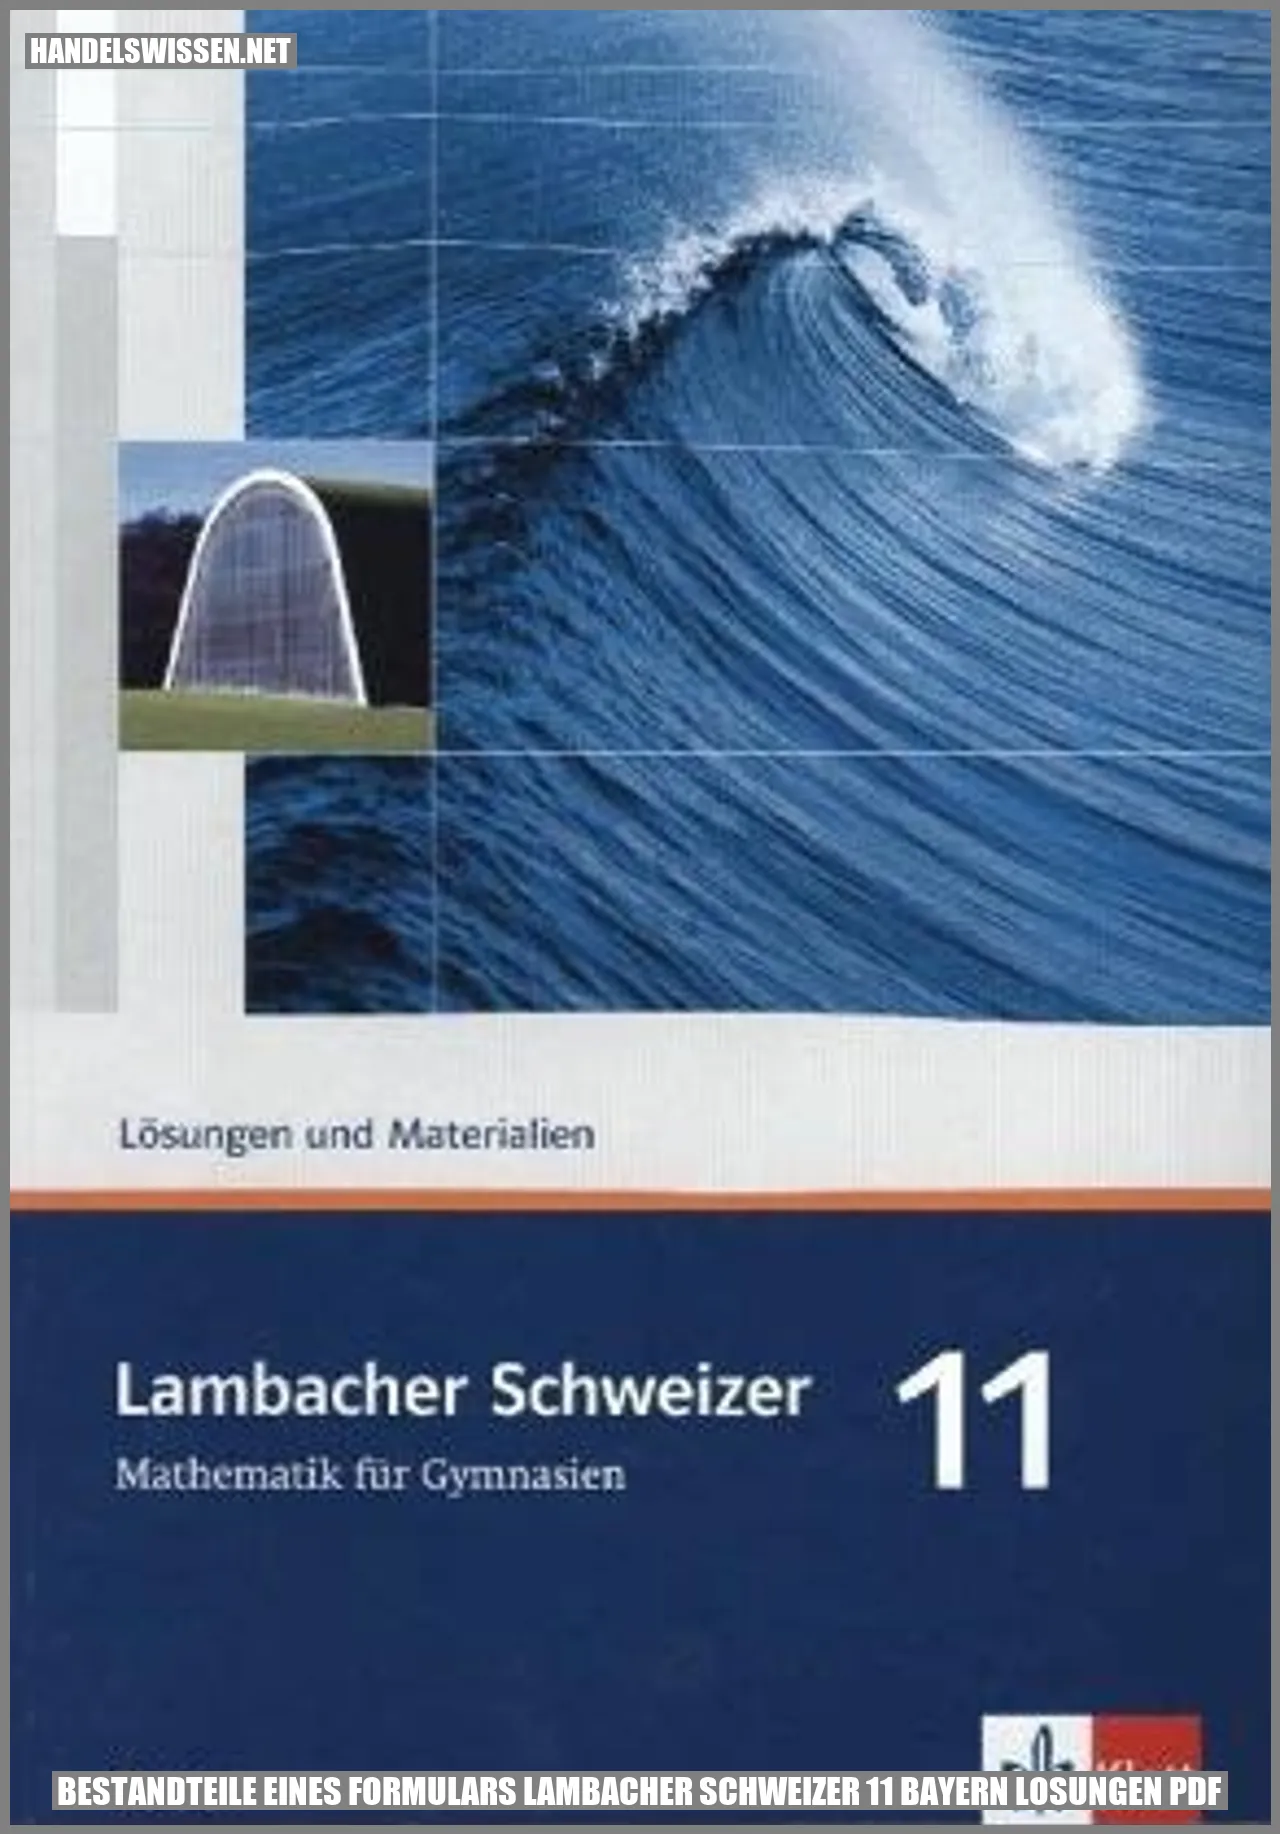 Bestandteile eines Formulars Lambacher Schweizer 11 Bayern Lösungen PDF